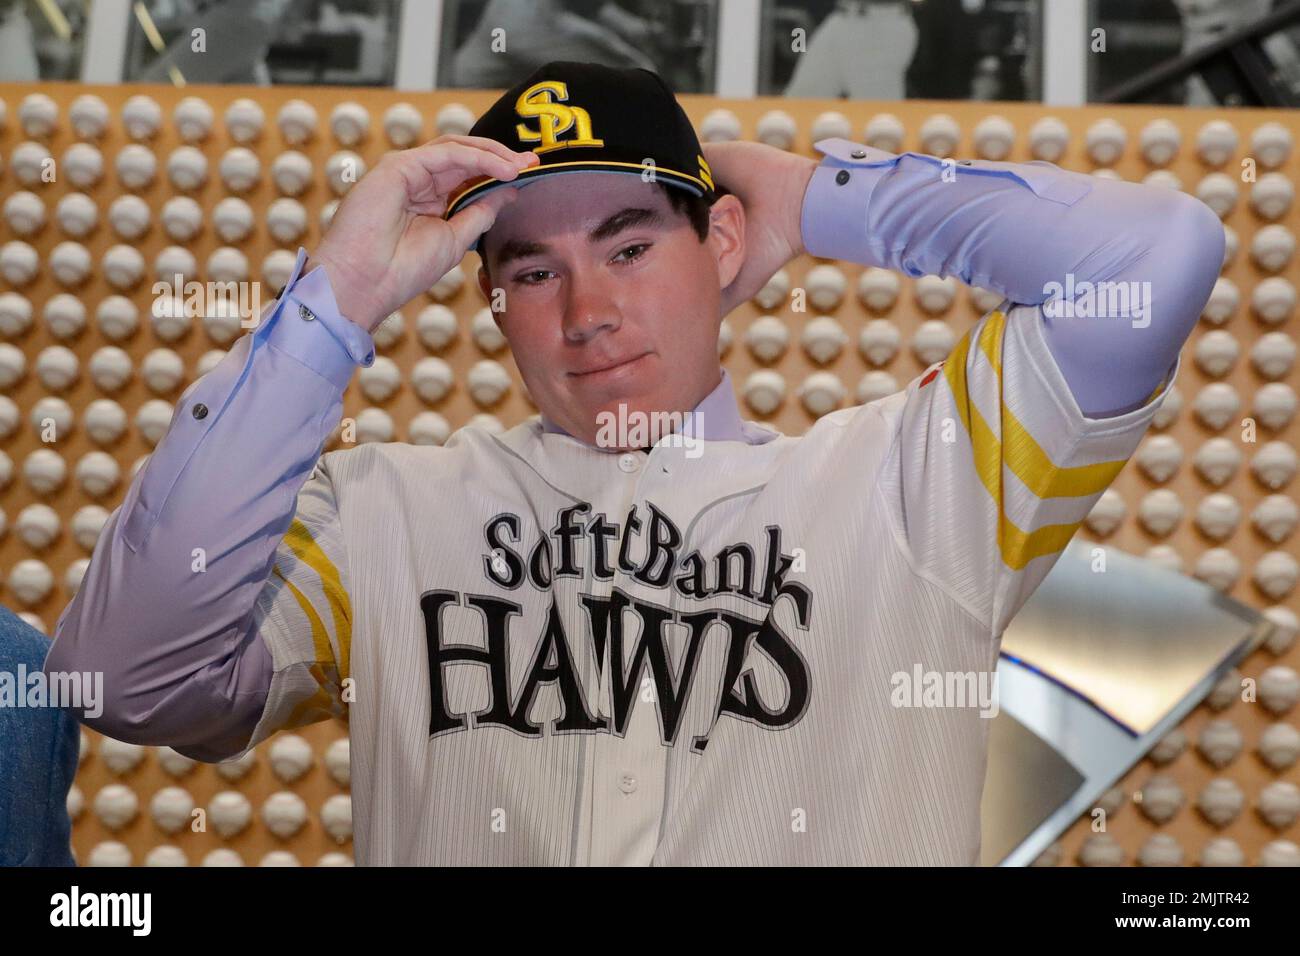 SoftBank Hawks pitcher Carter Stewart Jr